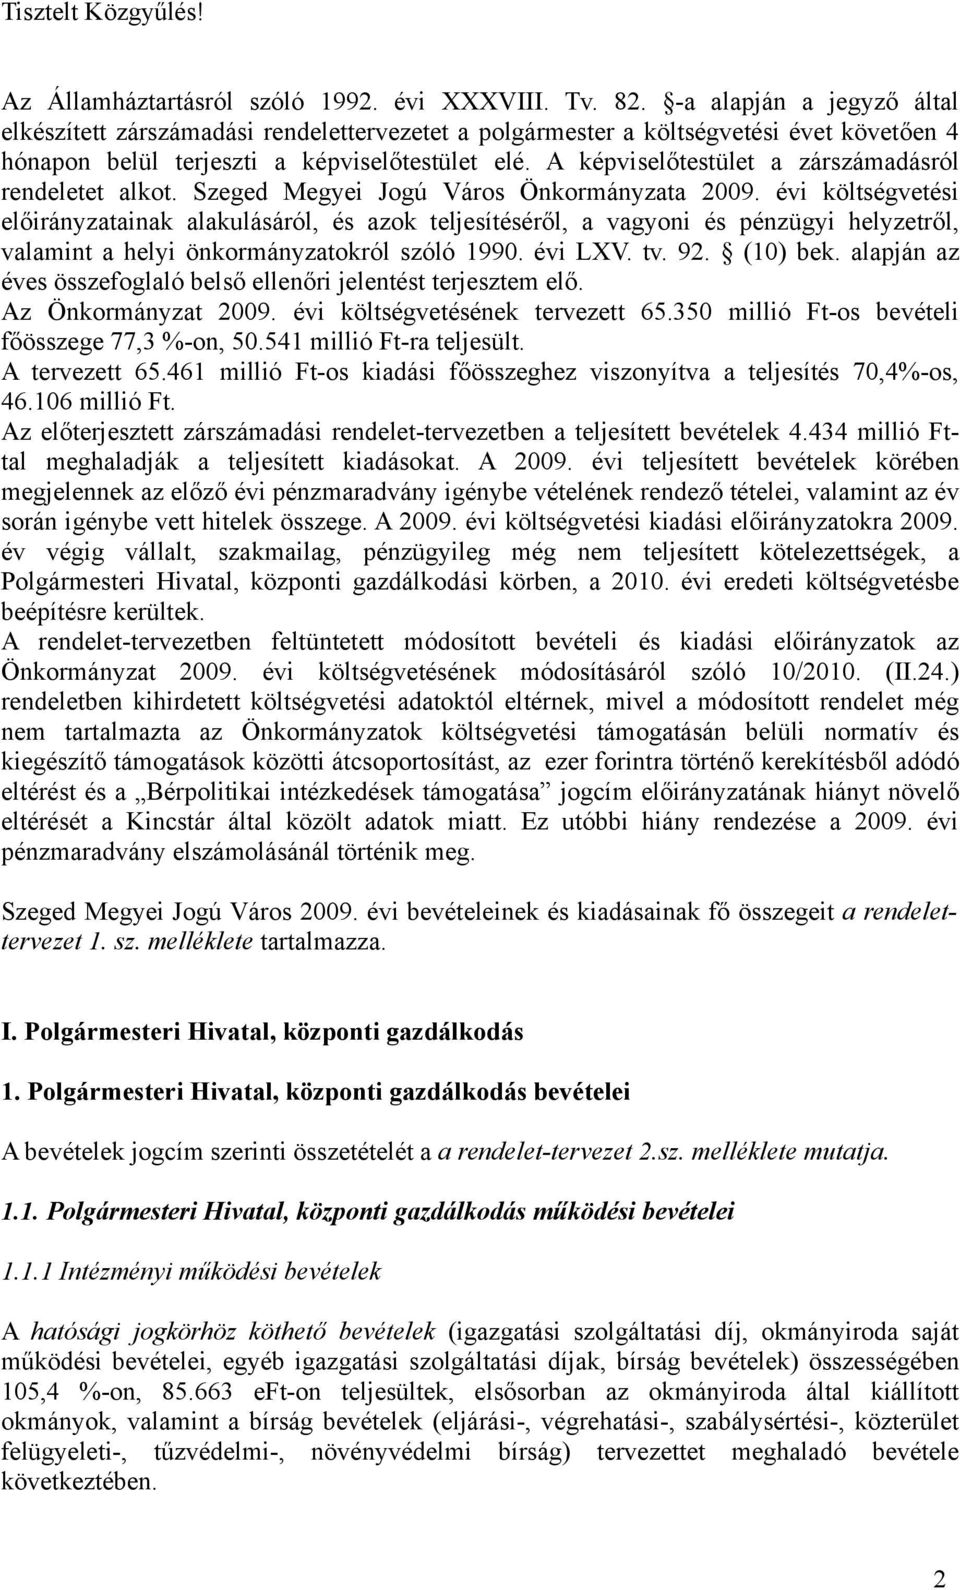 A képviselőtestület a zárszámadásról rendeletet alkot. Szeged Megyei Jogú Város Önkormányzata 2009.